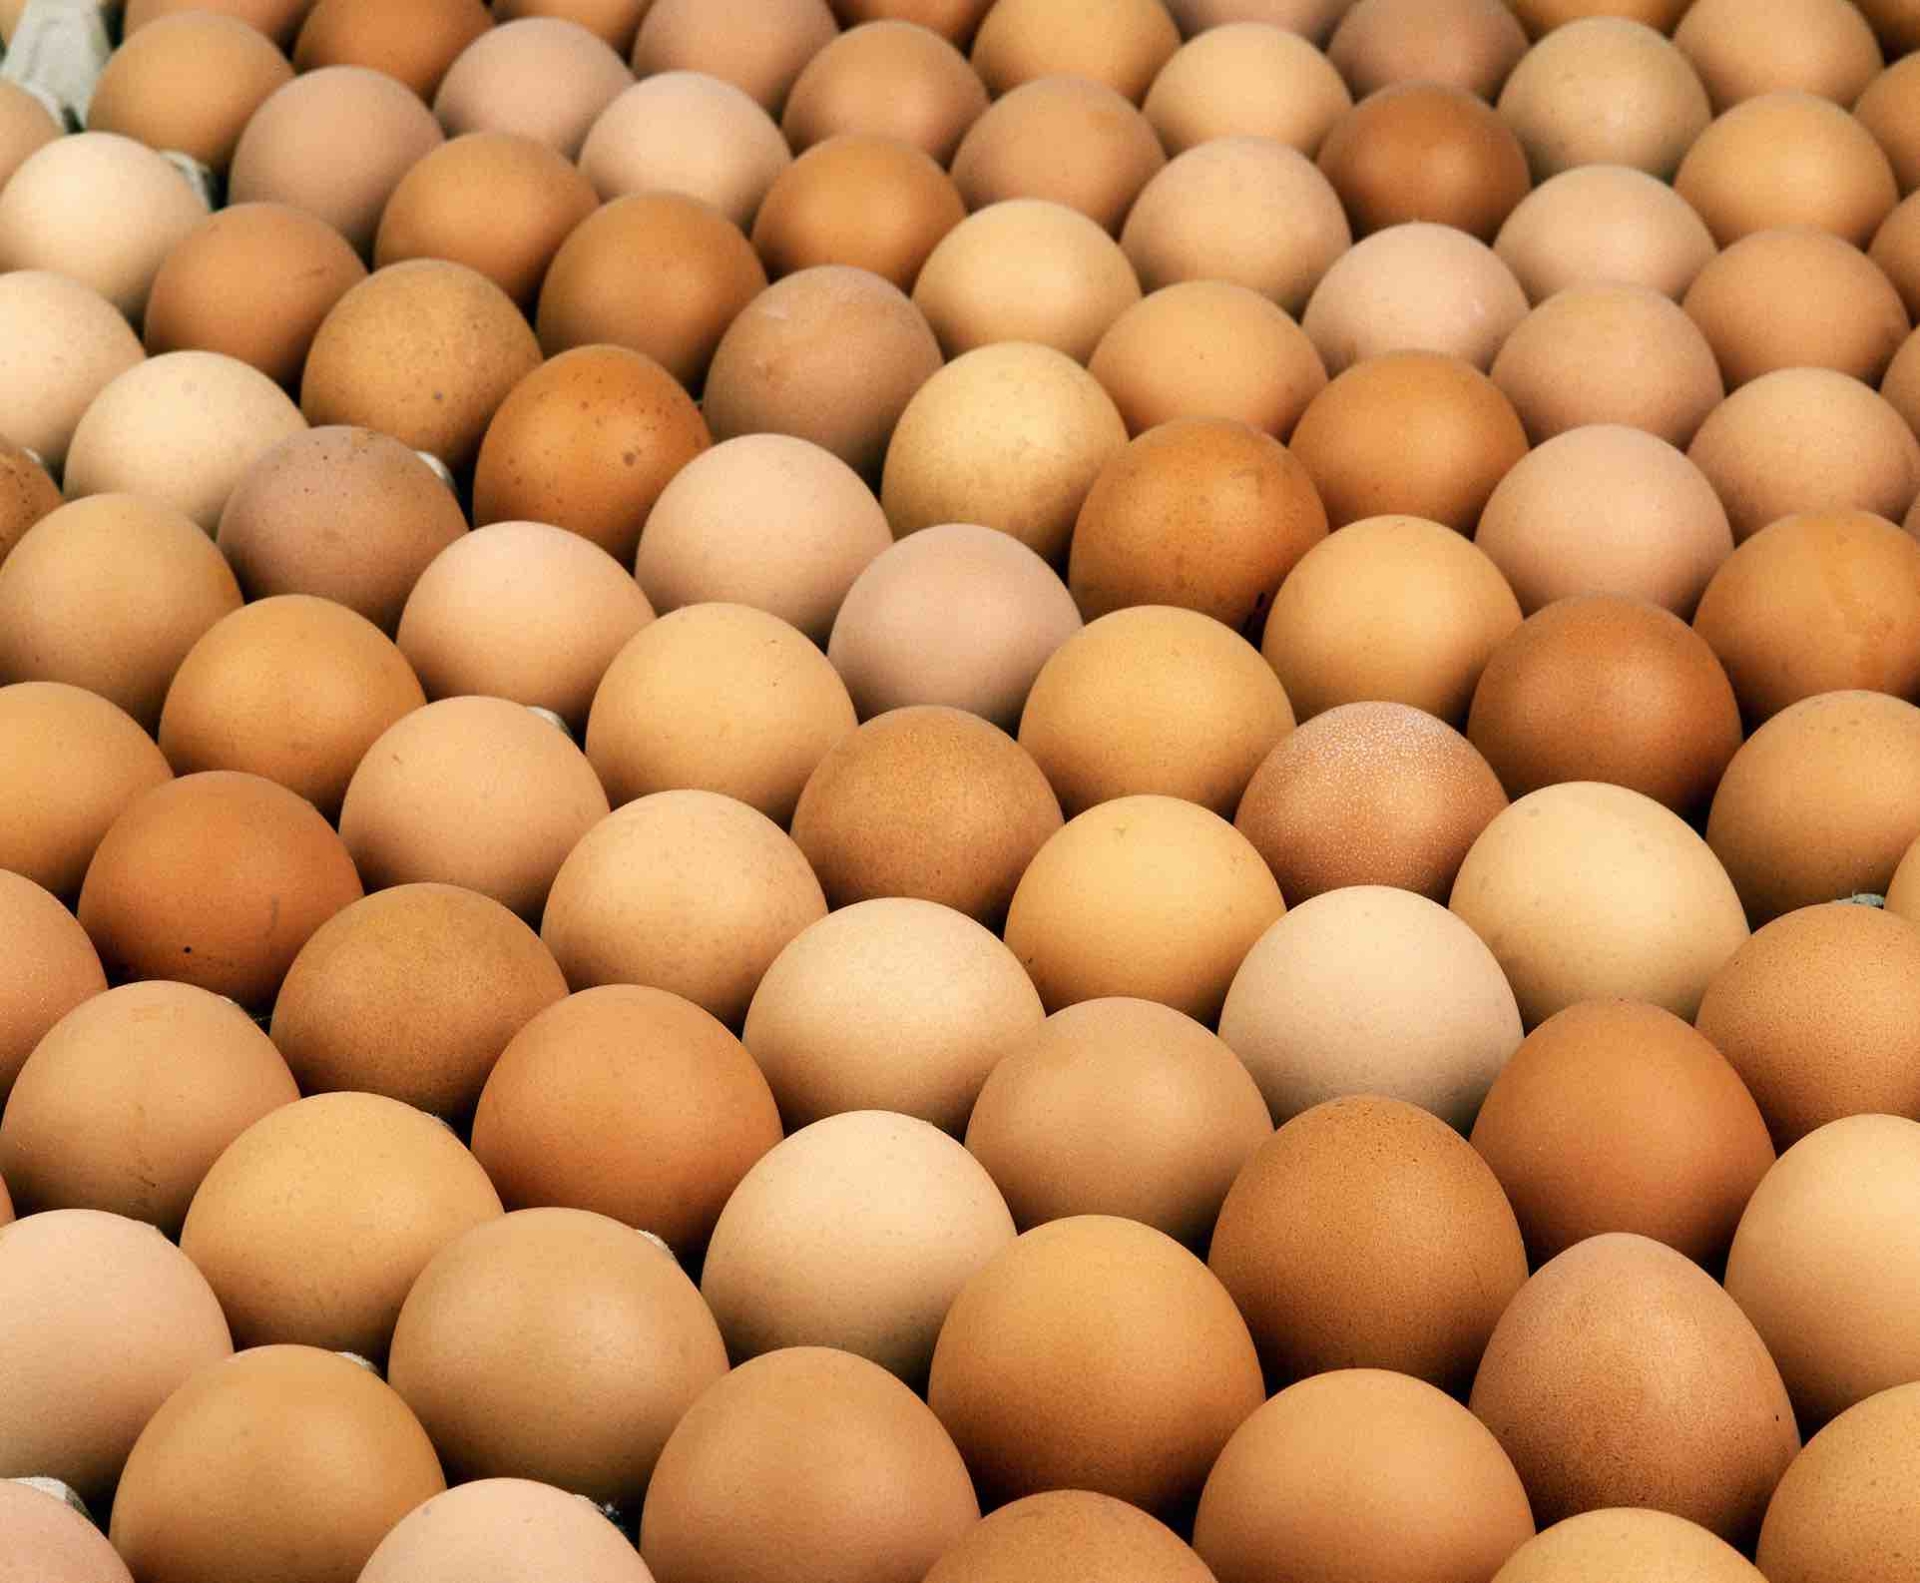 Marché de l’œuf : des tensions inédites